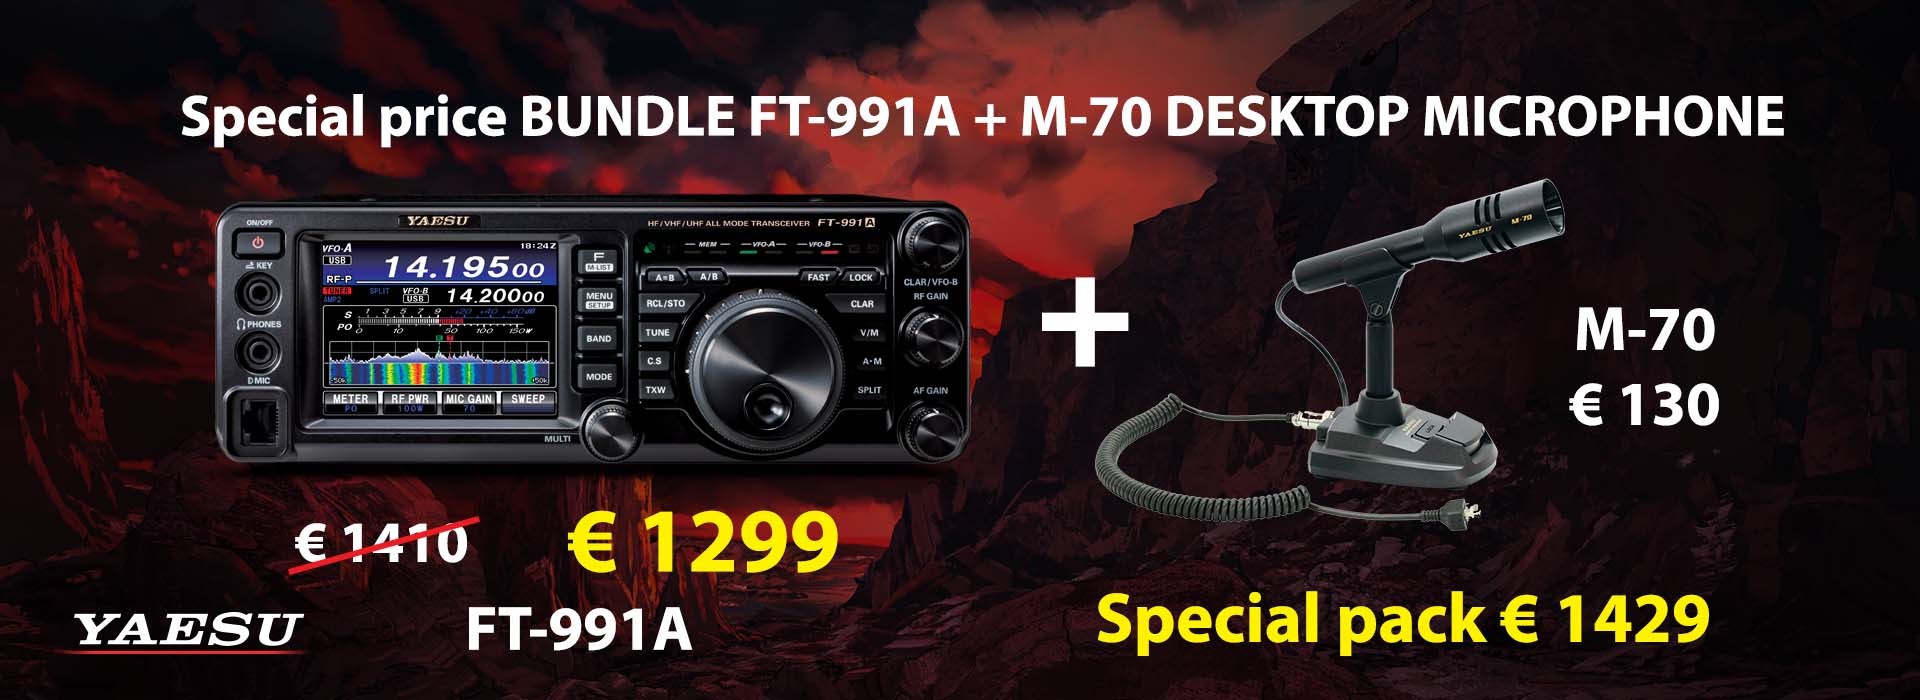 Special bundle FT-991A + M-70